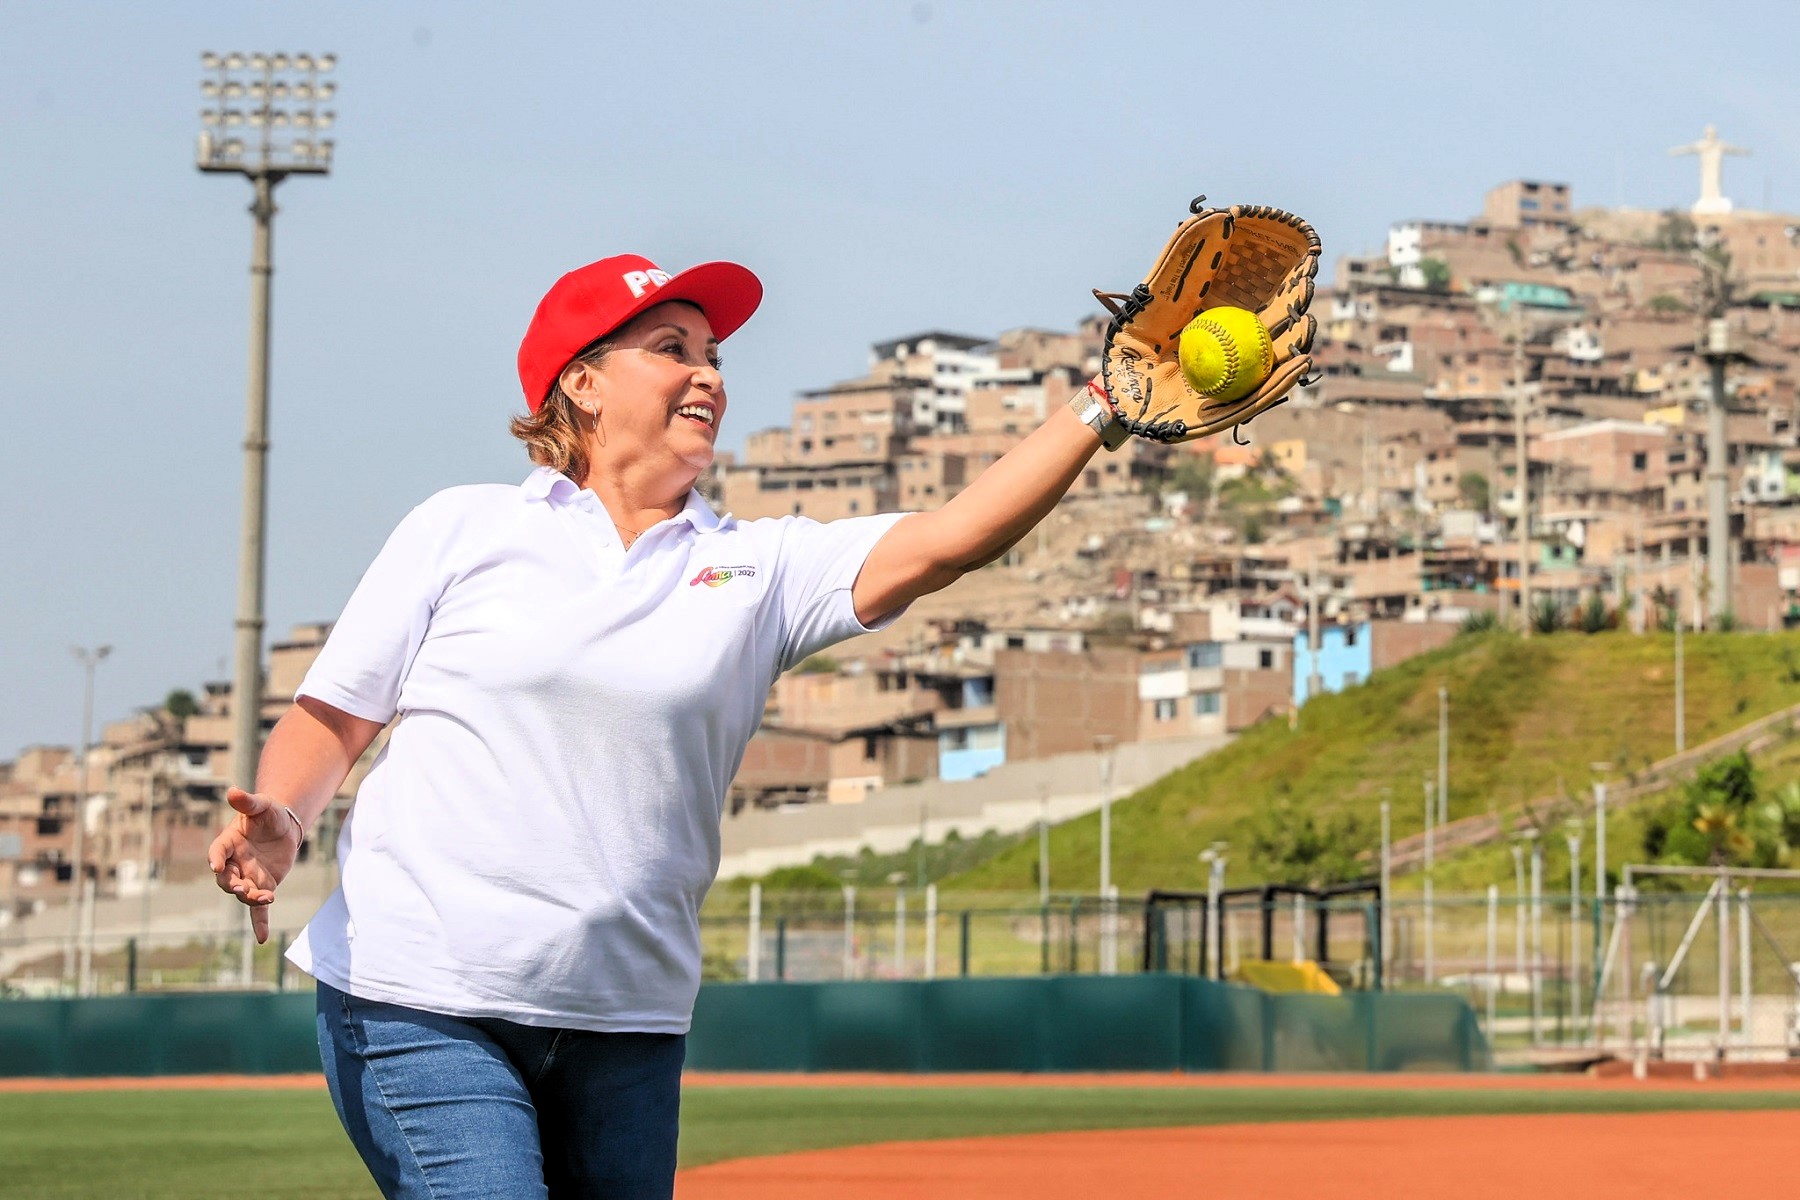 La jefa de la nación, Dina Boluarte Zegarra, inspecciona desde tempranas horas del día sedes de los Juegos Panamericanos y Parapanamericanos 2027.